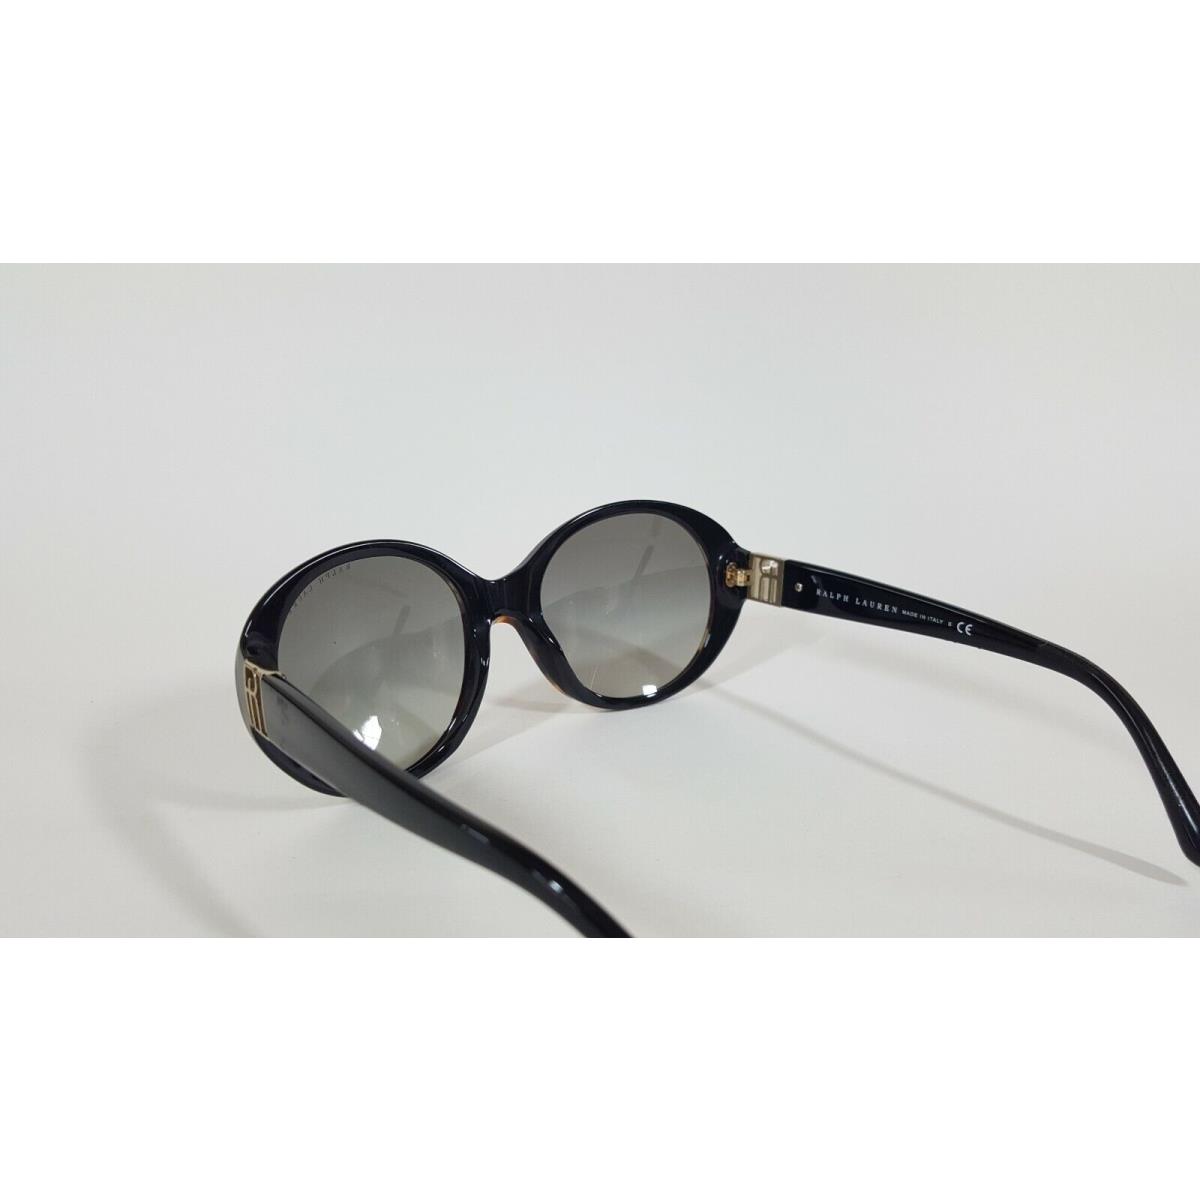 Ralph Lauren sunglasses  - Havana Honey Frame, Black Gradient Lens